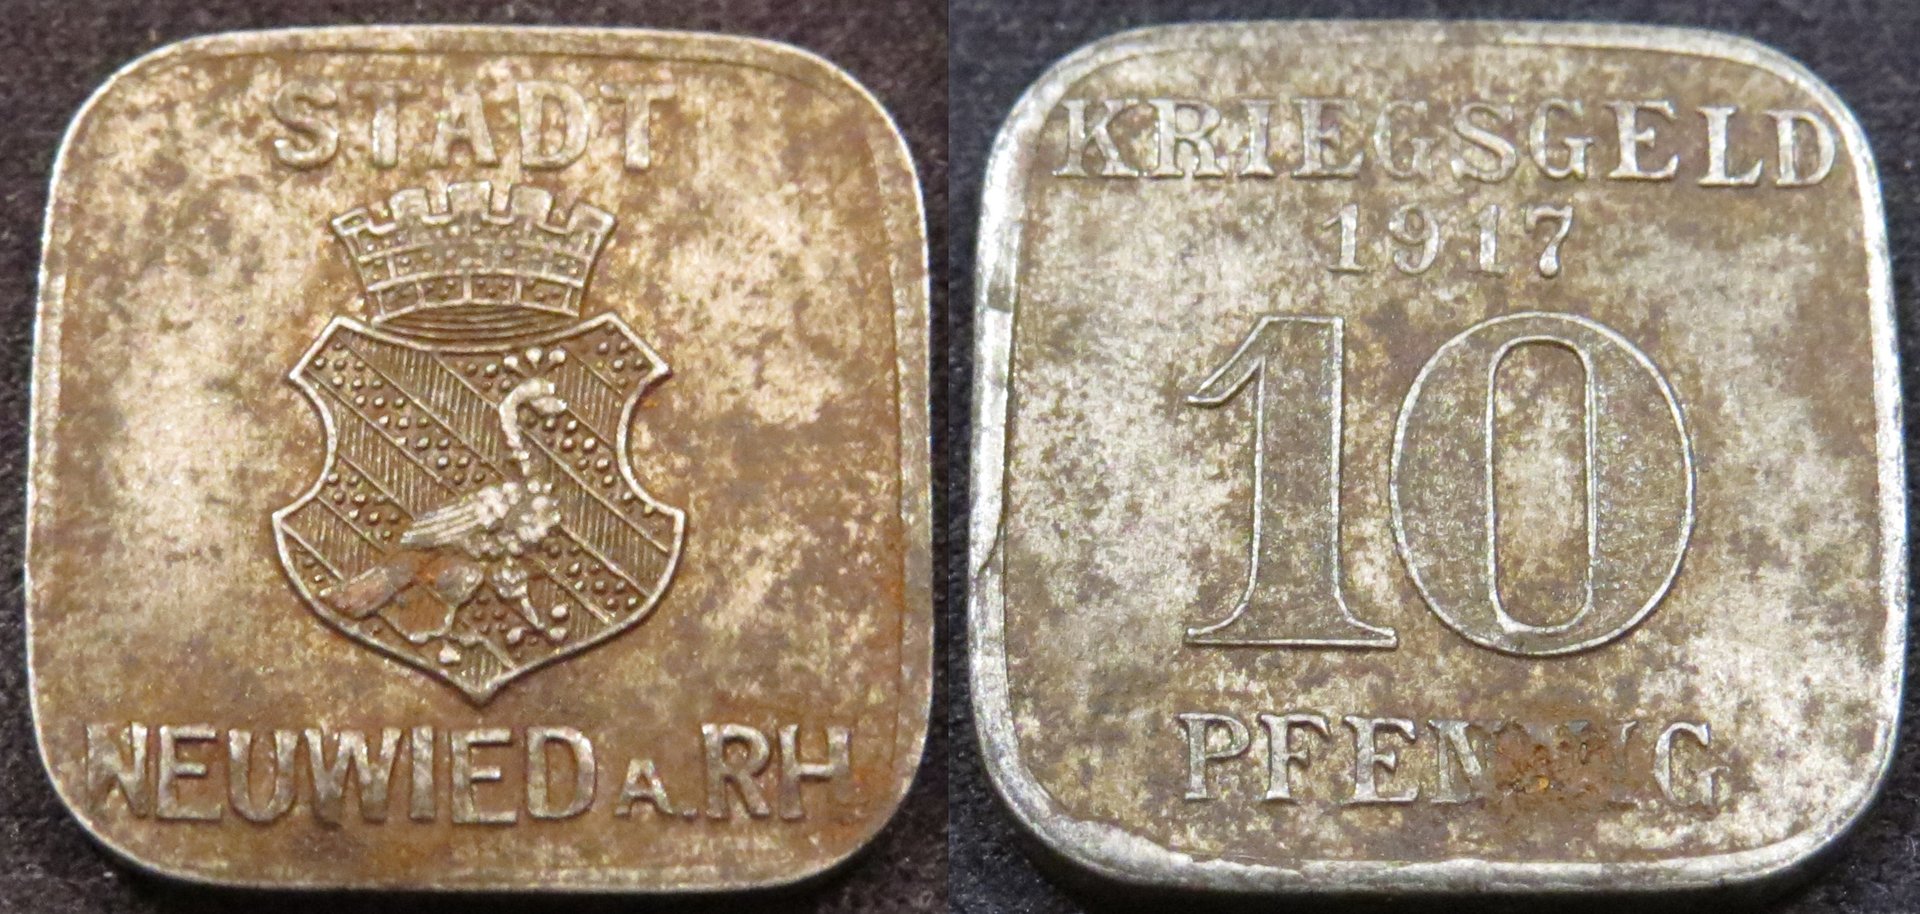 Neuweid am Rhein 1917 10 Pfennig.jpeg